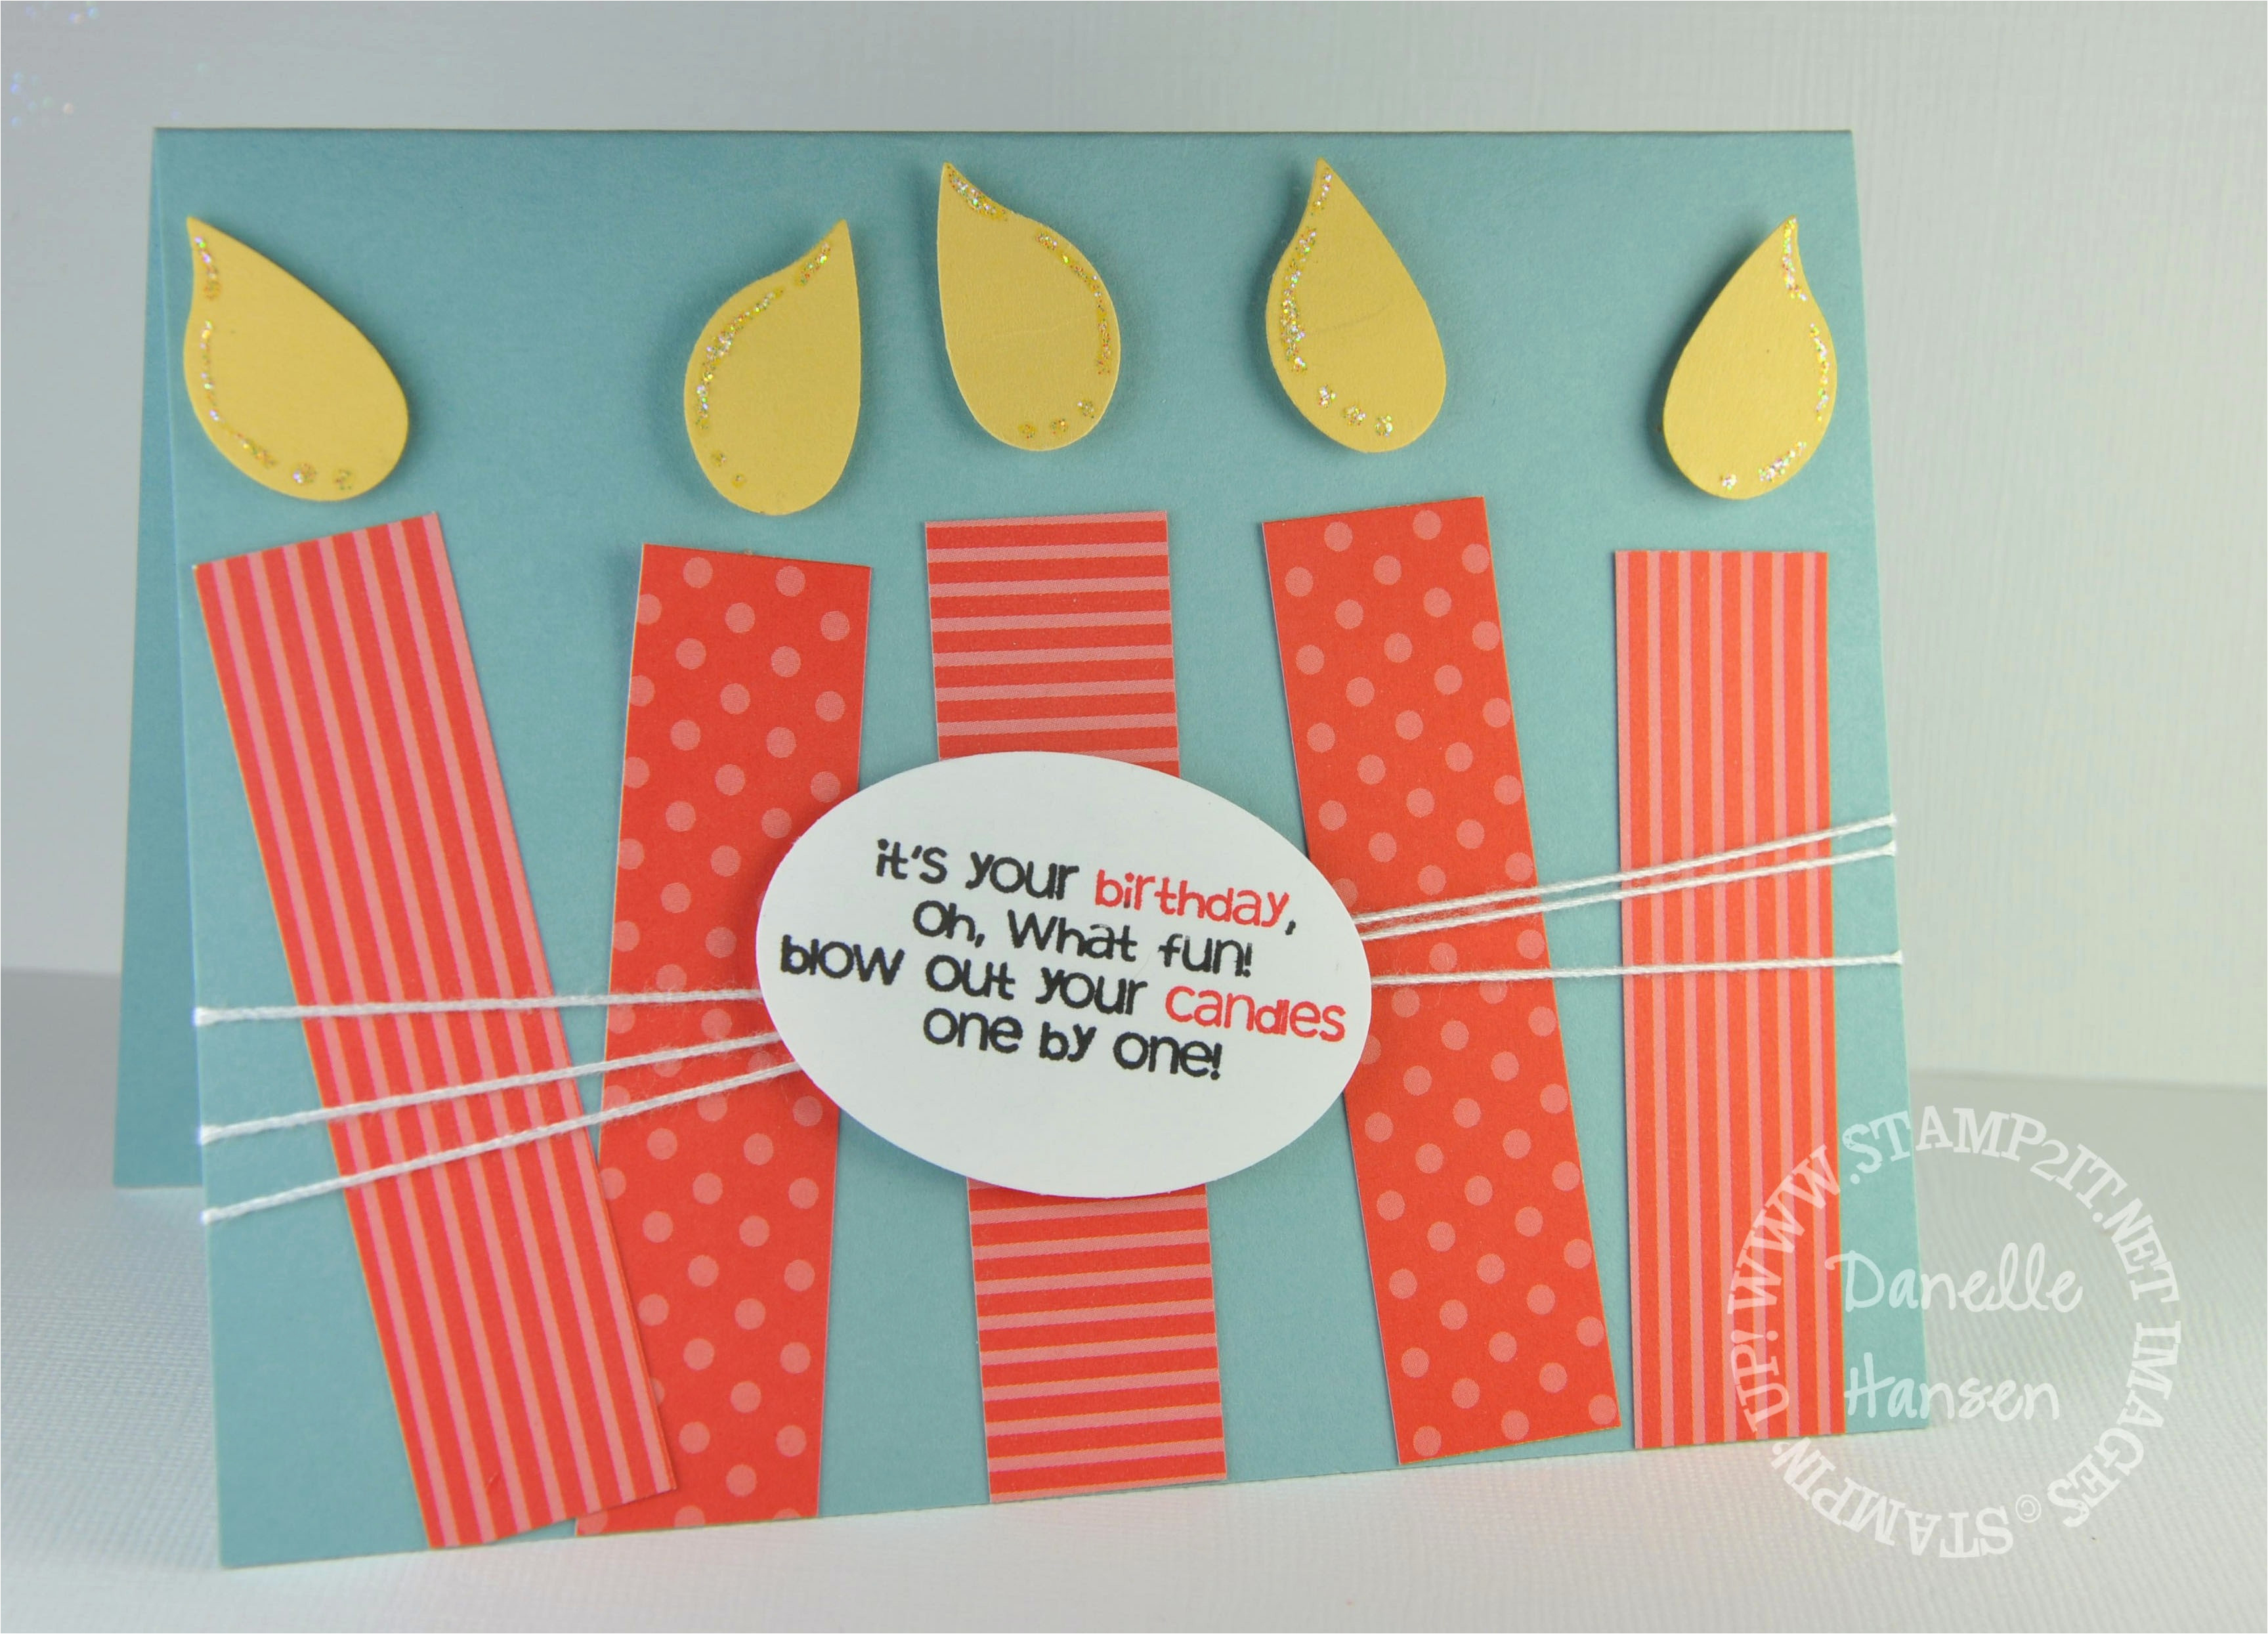 Birthday Cards For Him Ideas Diy Birthday Cards For Husband Creative Handmade Birthday Card Ideas